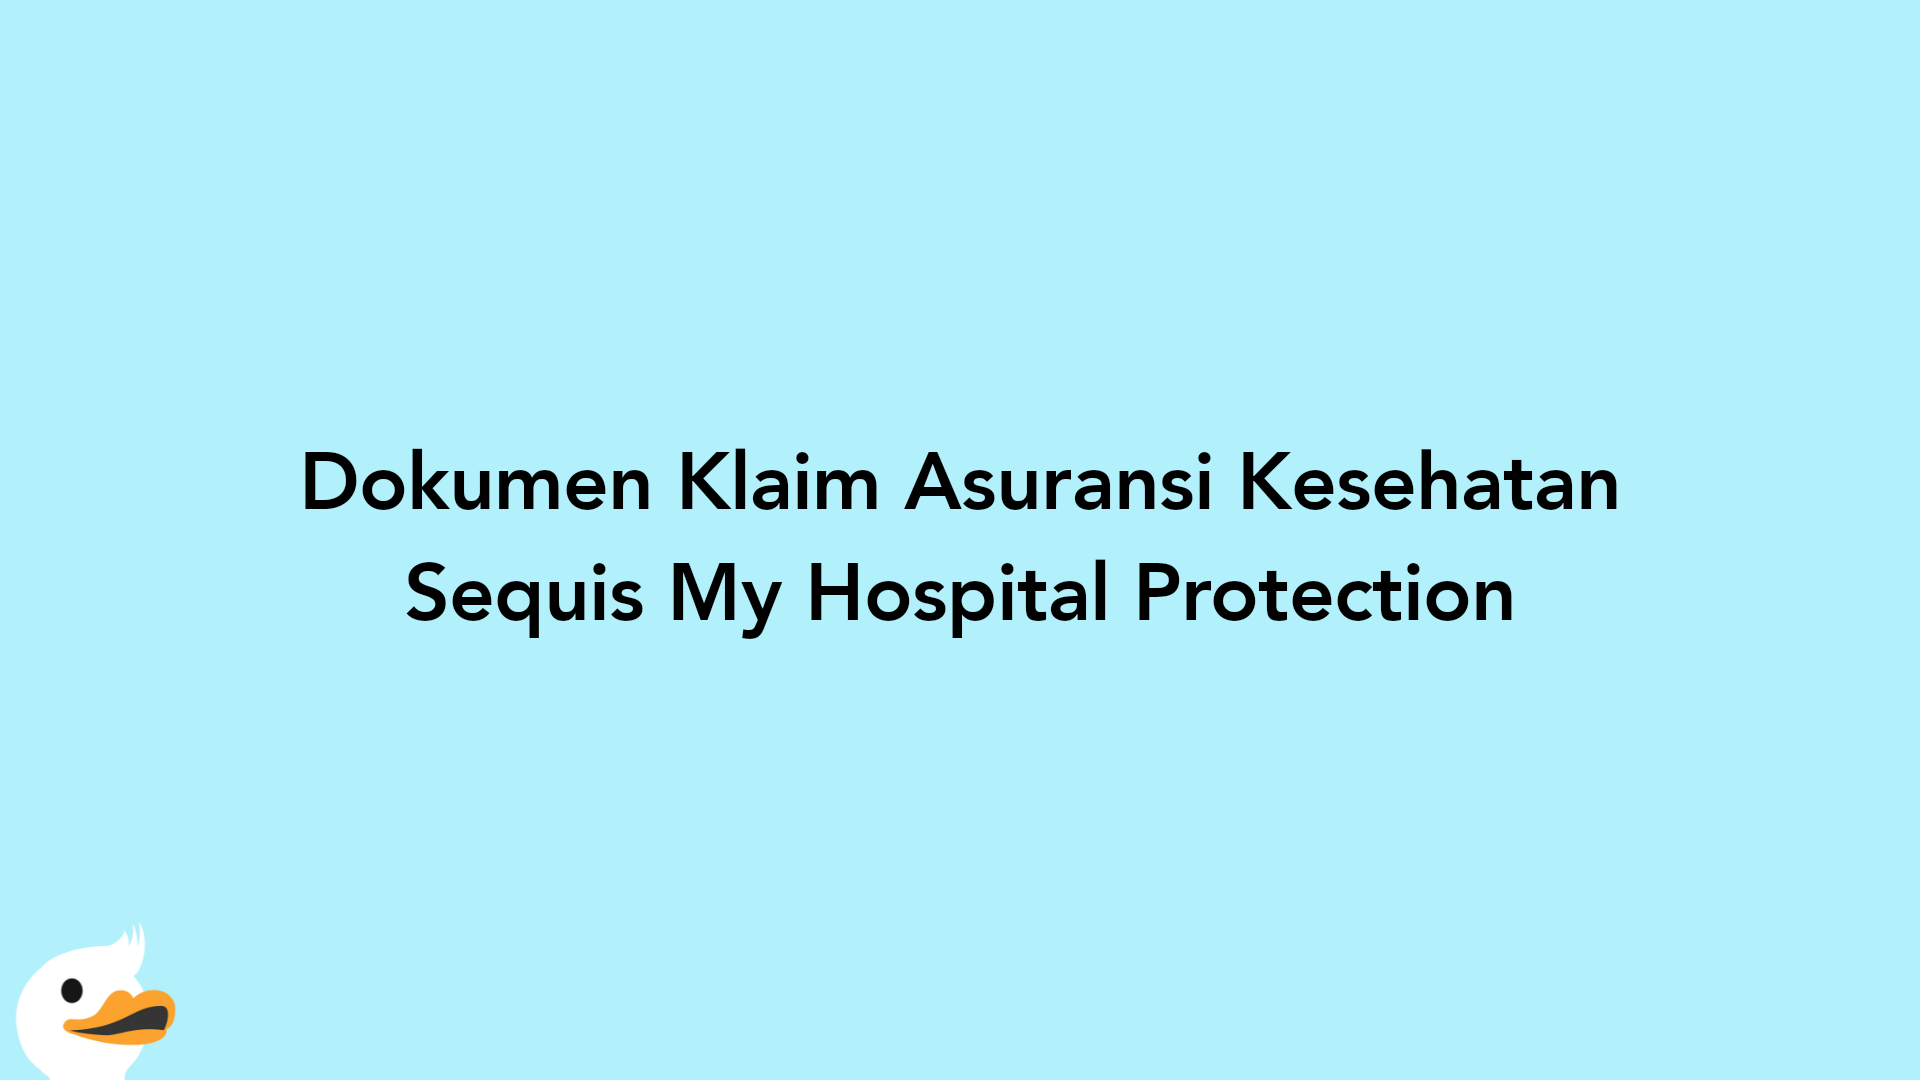 Dokumen Klaim Asuransi Kesehatan Sequis My Hospital Protection